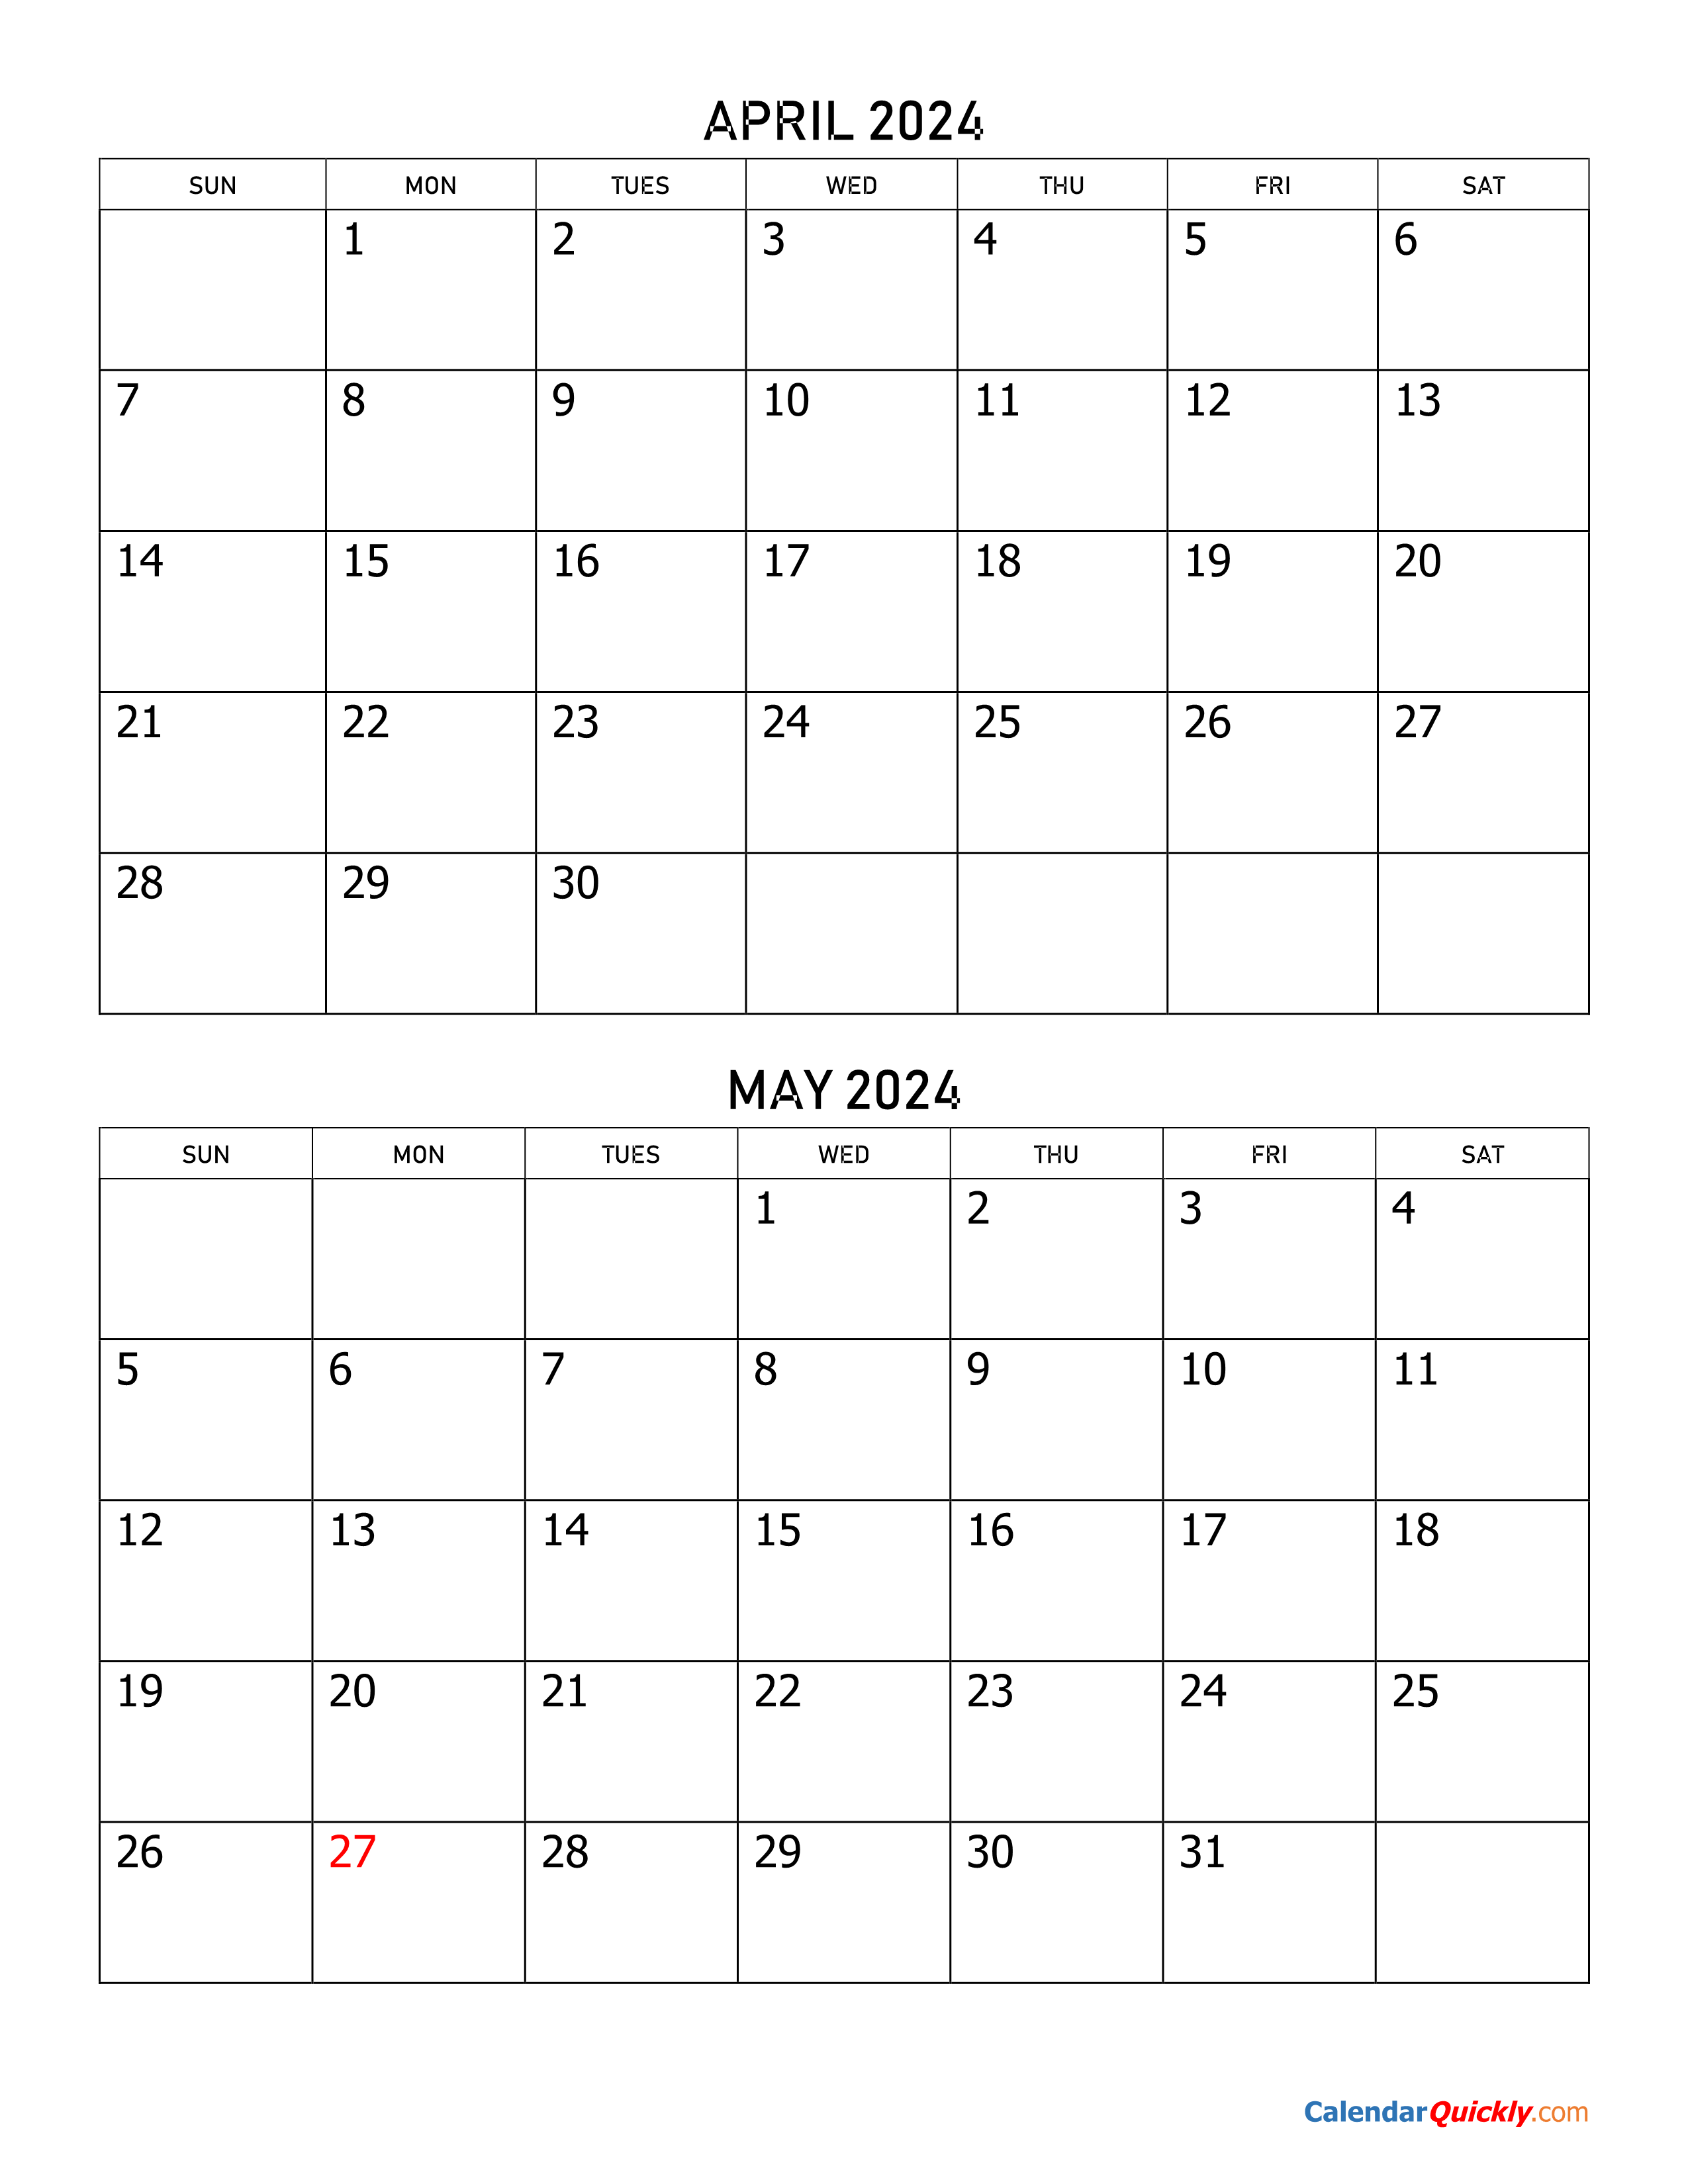 May 2024 Calendar Printable Free Printable Templates By Nora | Free Printable Calendar 2024 April May